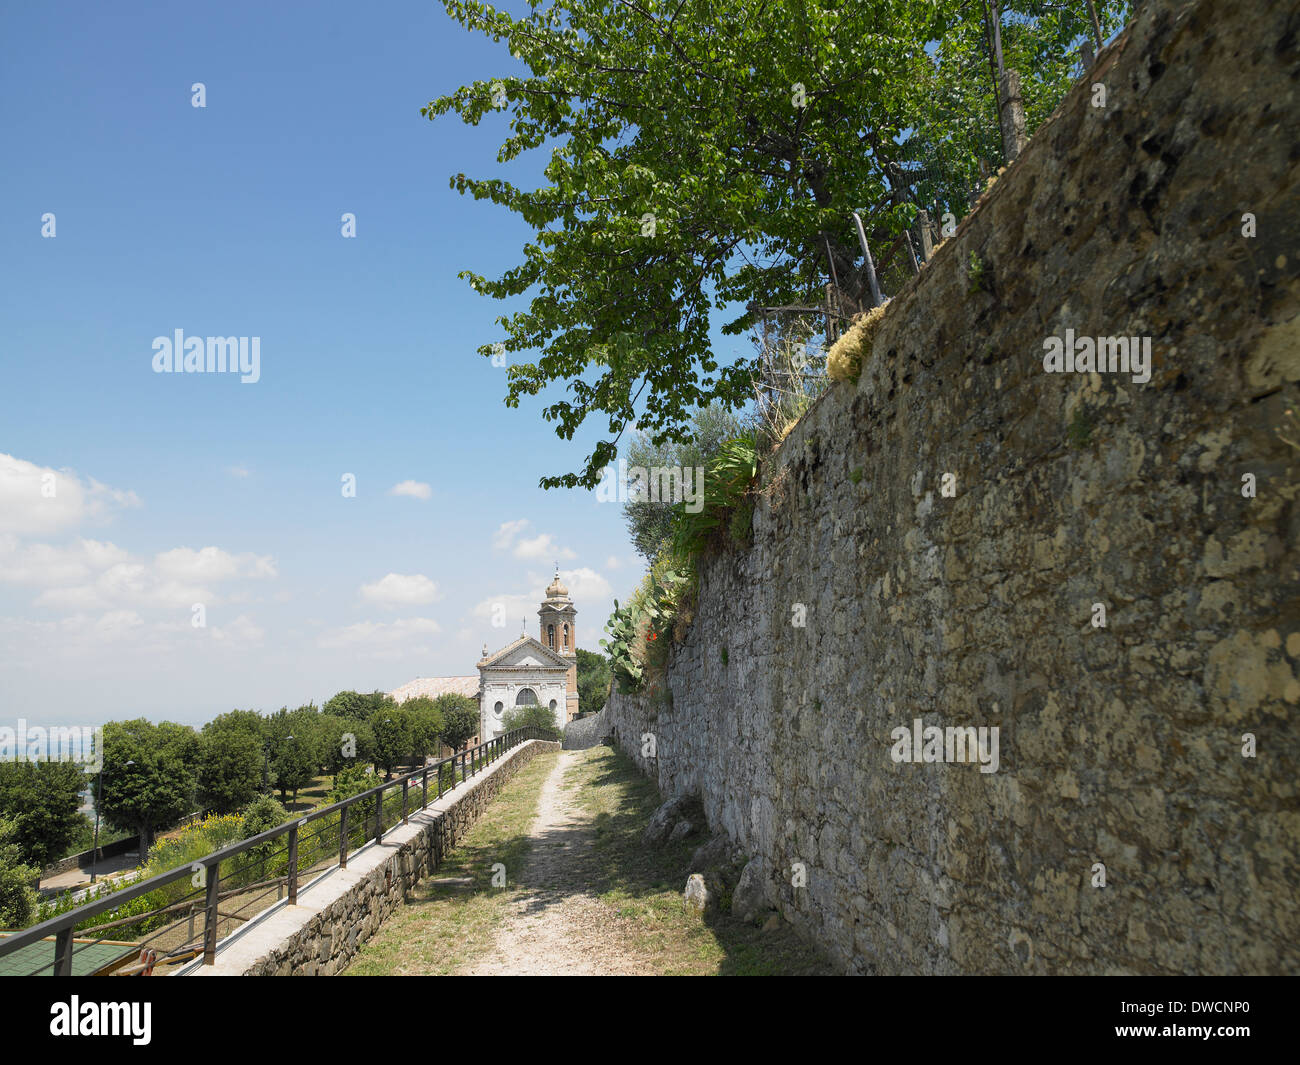 Church exterior, Tuscany, Italy Stock Photo